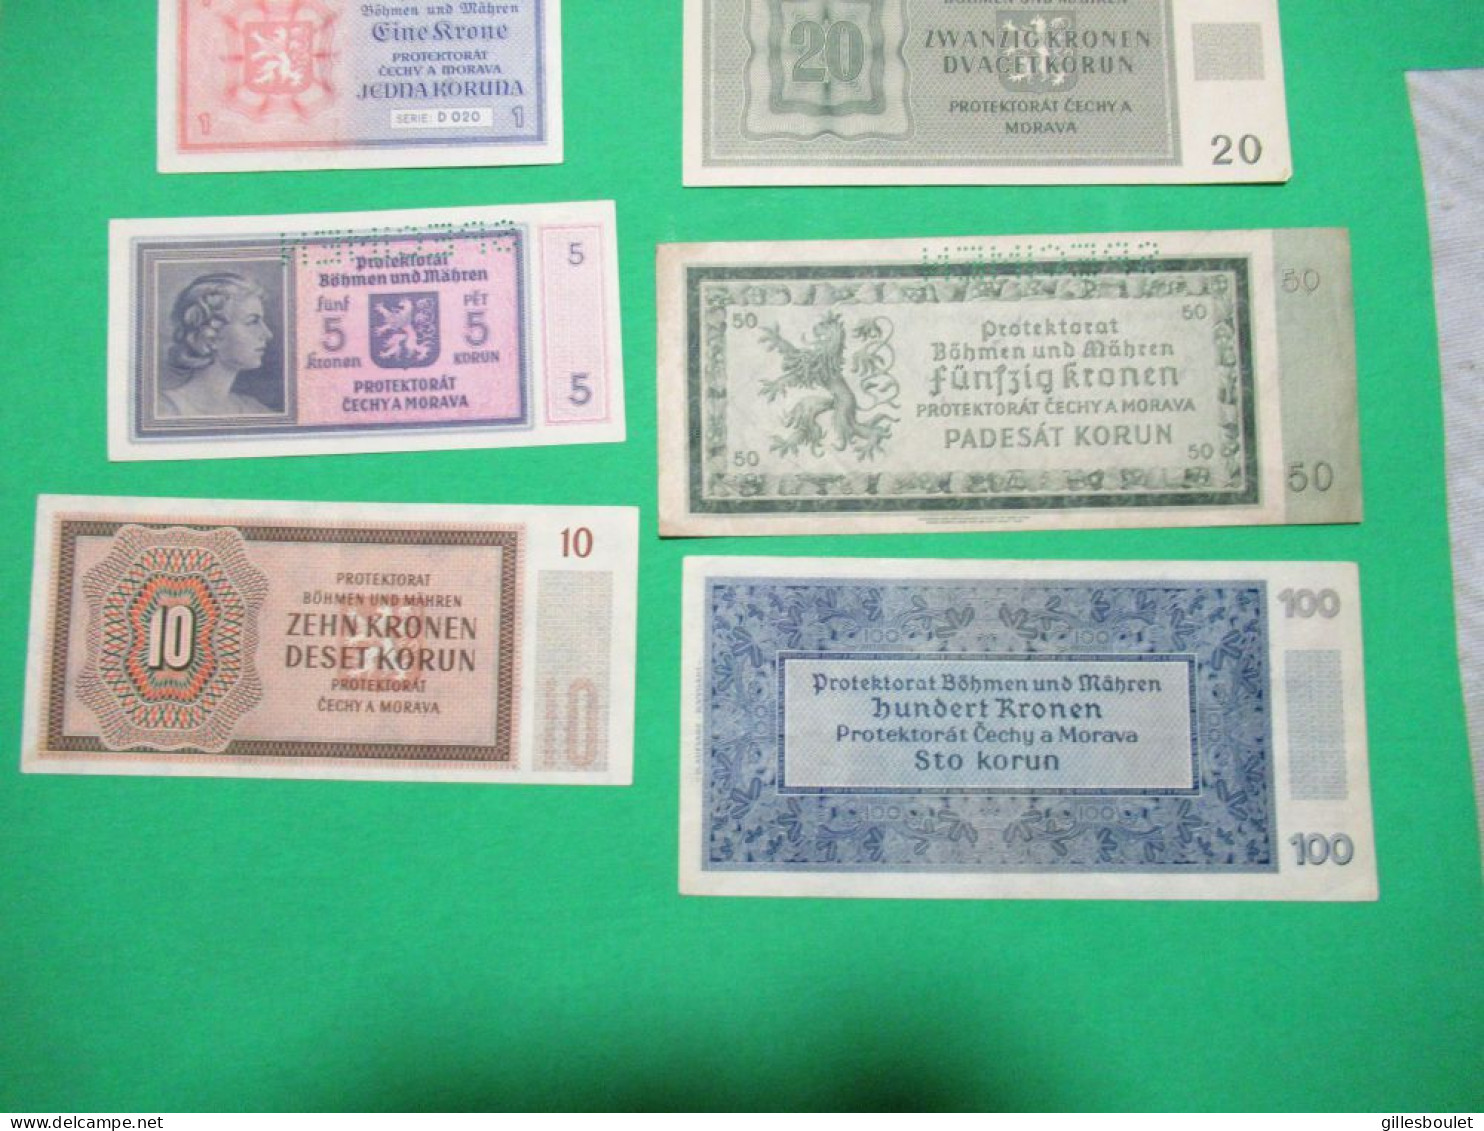 6 billets. Allemagne Protektorat Tchécoslovaquie 1940-45. Plusieurs spécimens. Rares billets. Voir description complète.